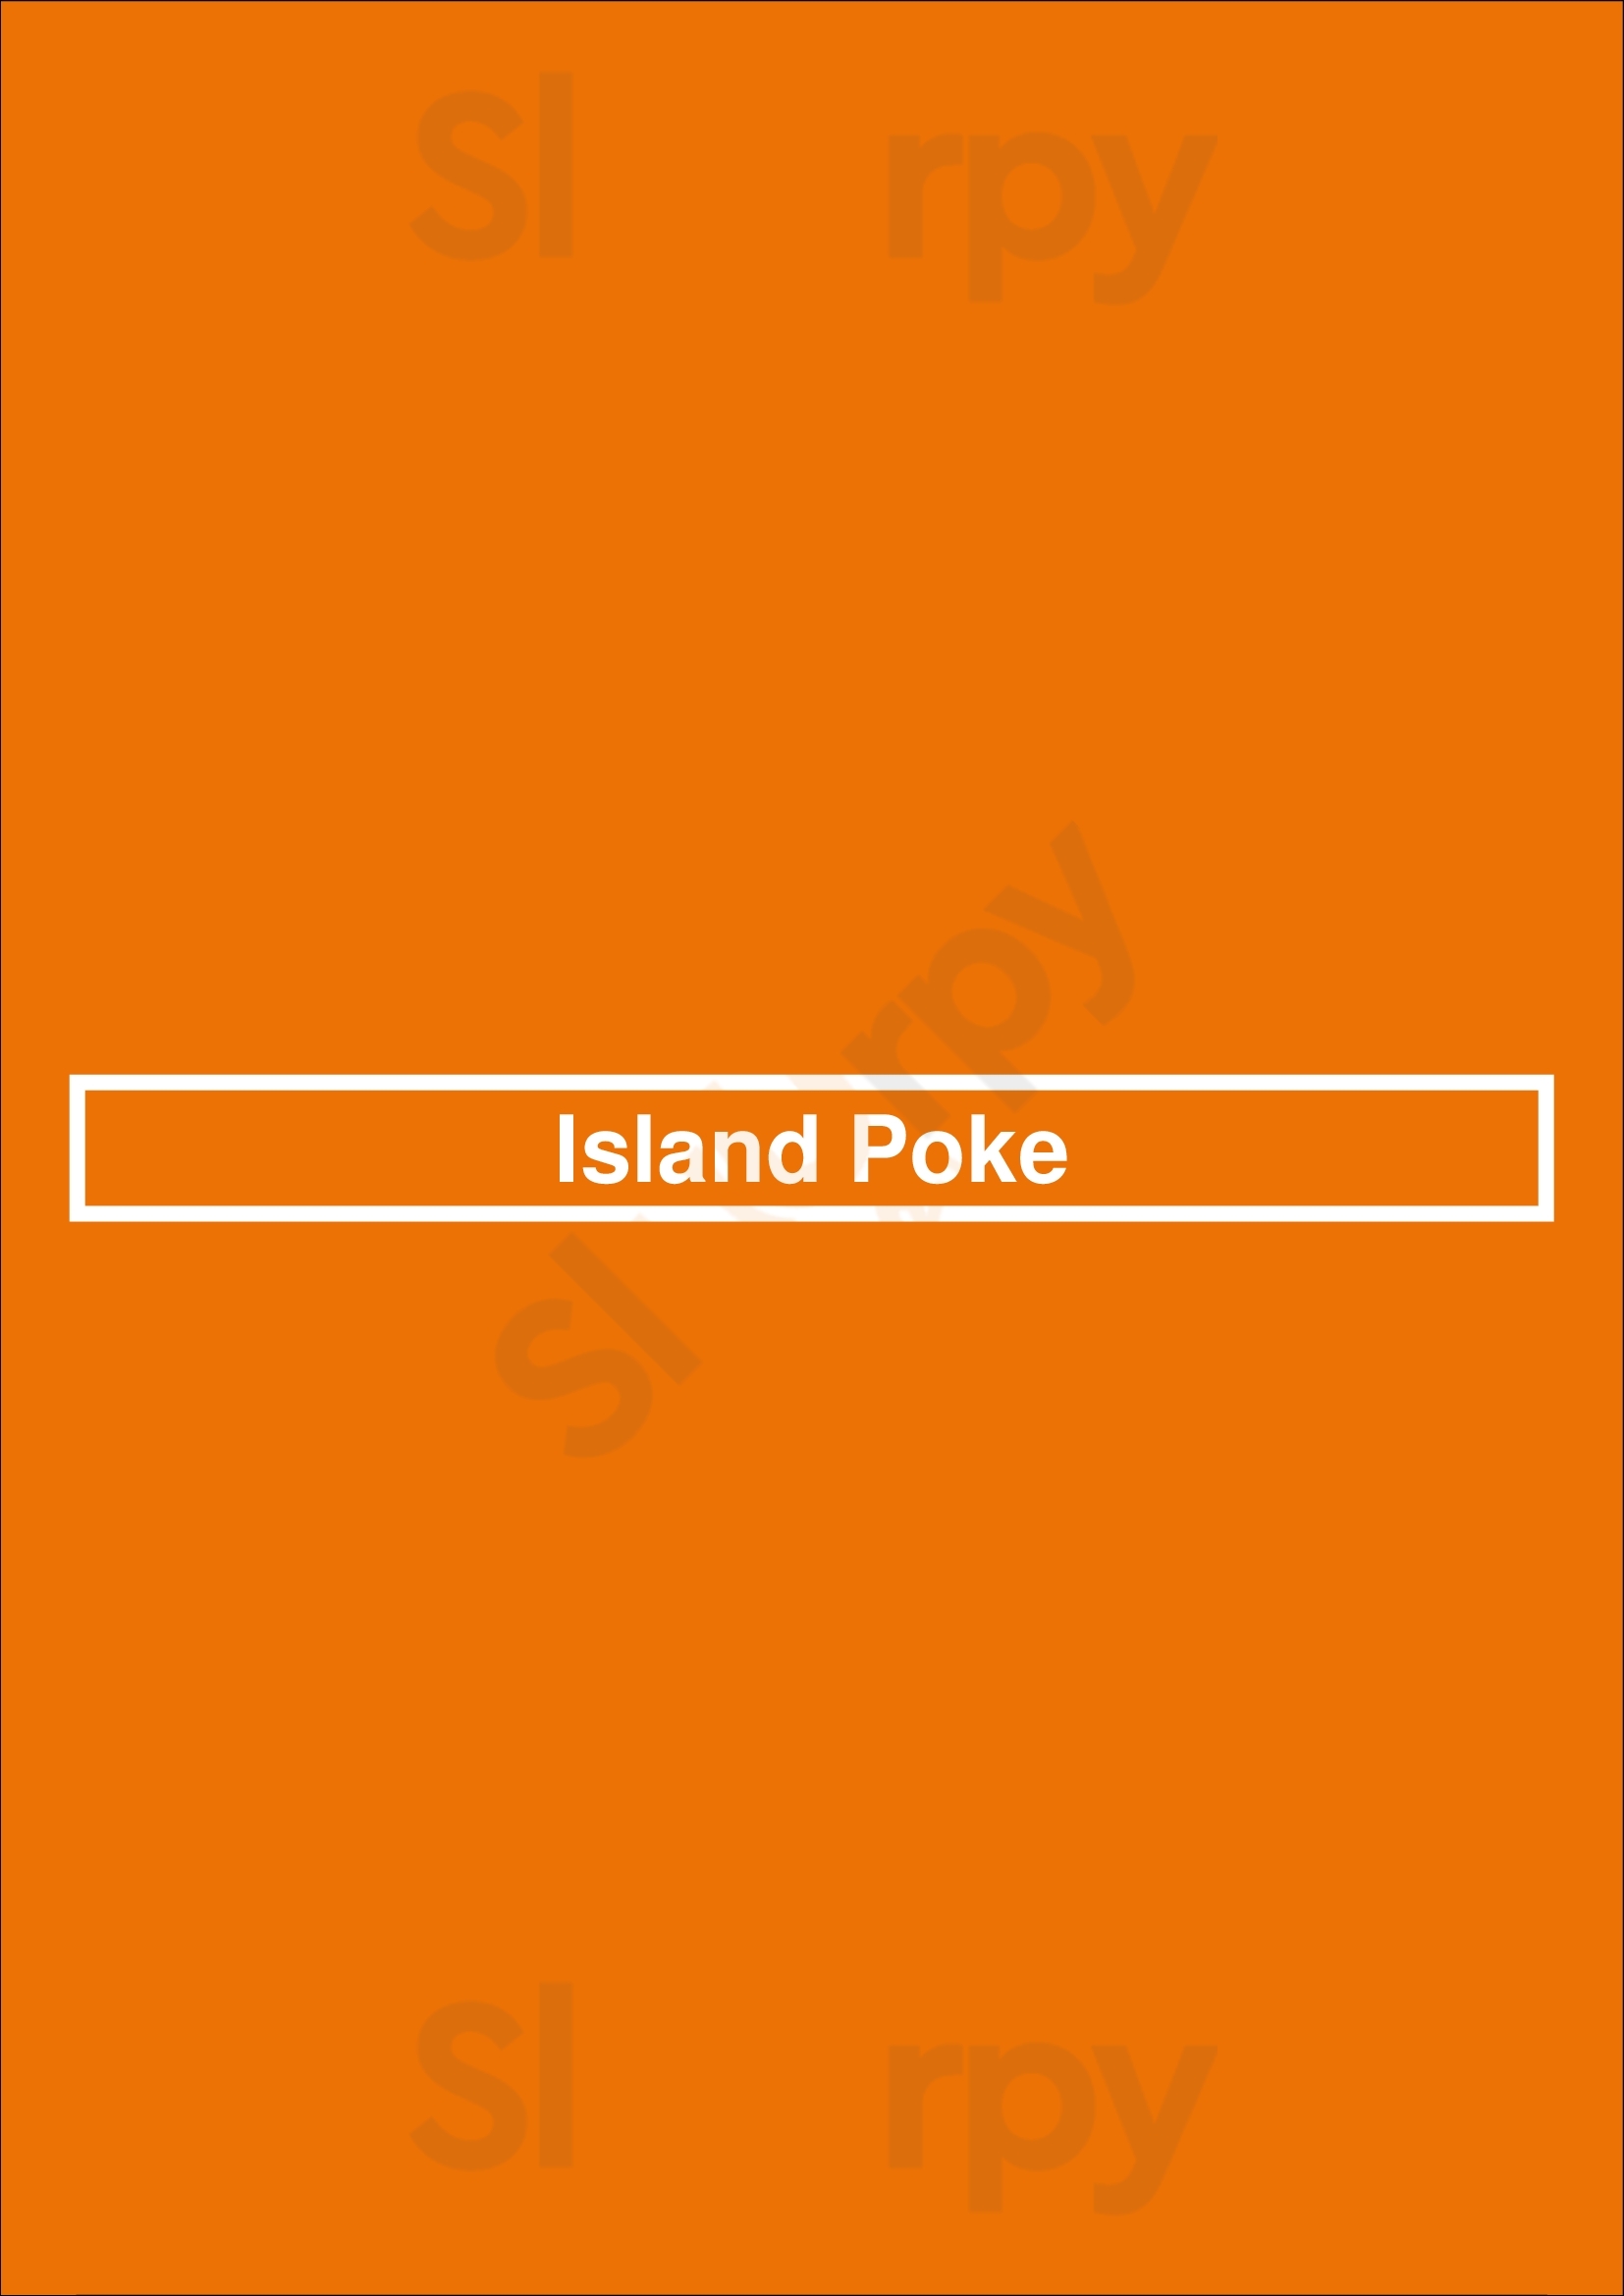 Island Poke Victoria Menu - 1